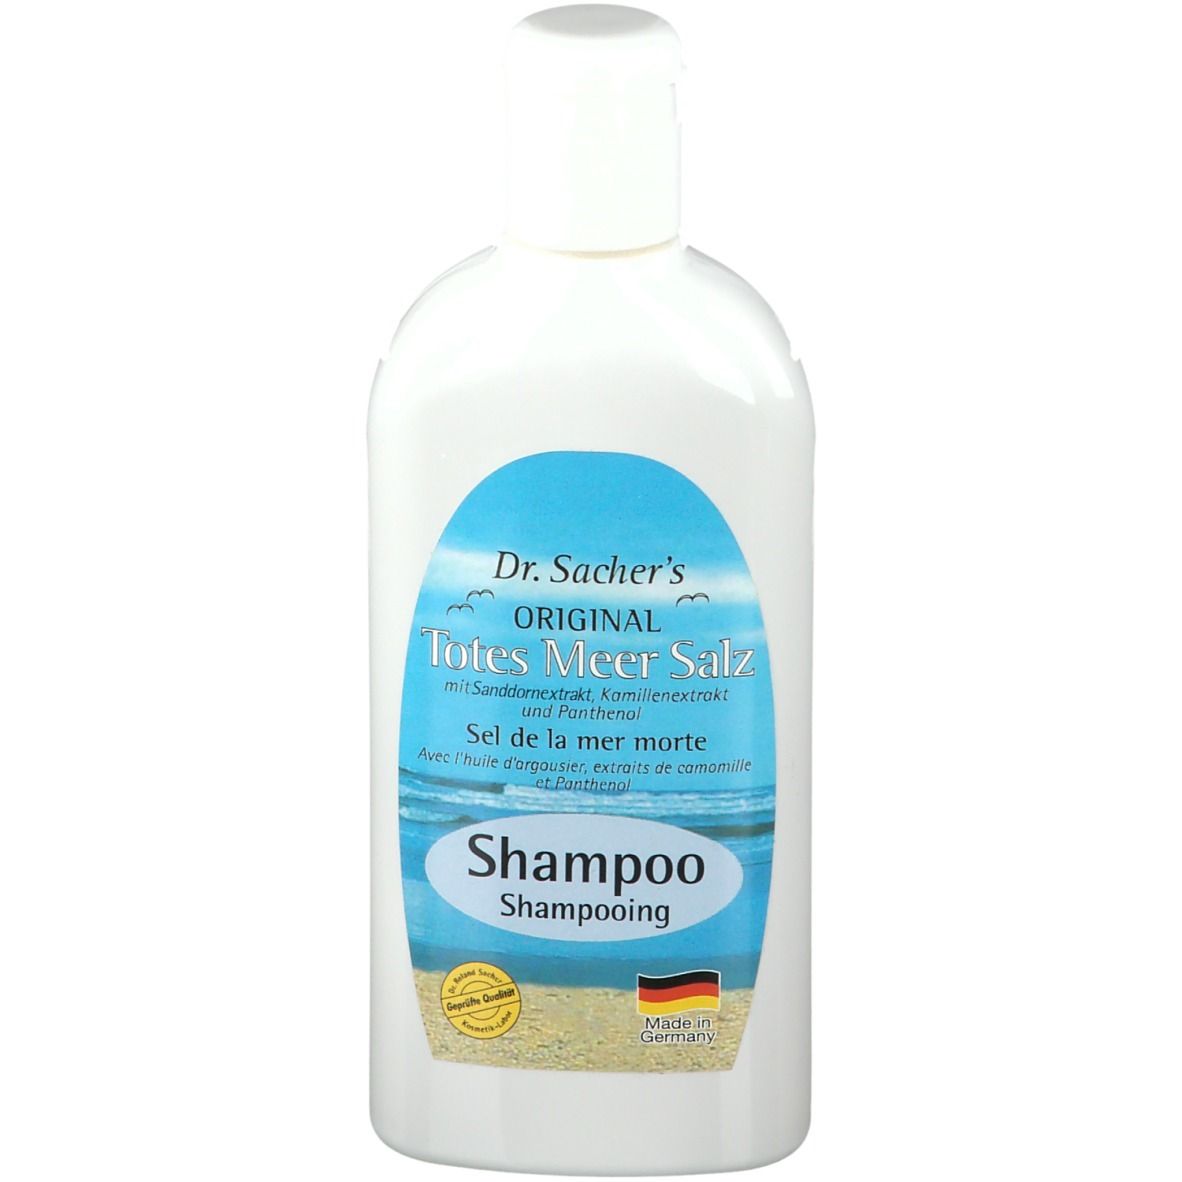 Dr. Sacher´s ORIGINAL Totes Meer Salz Shampoo